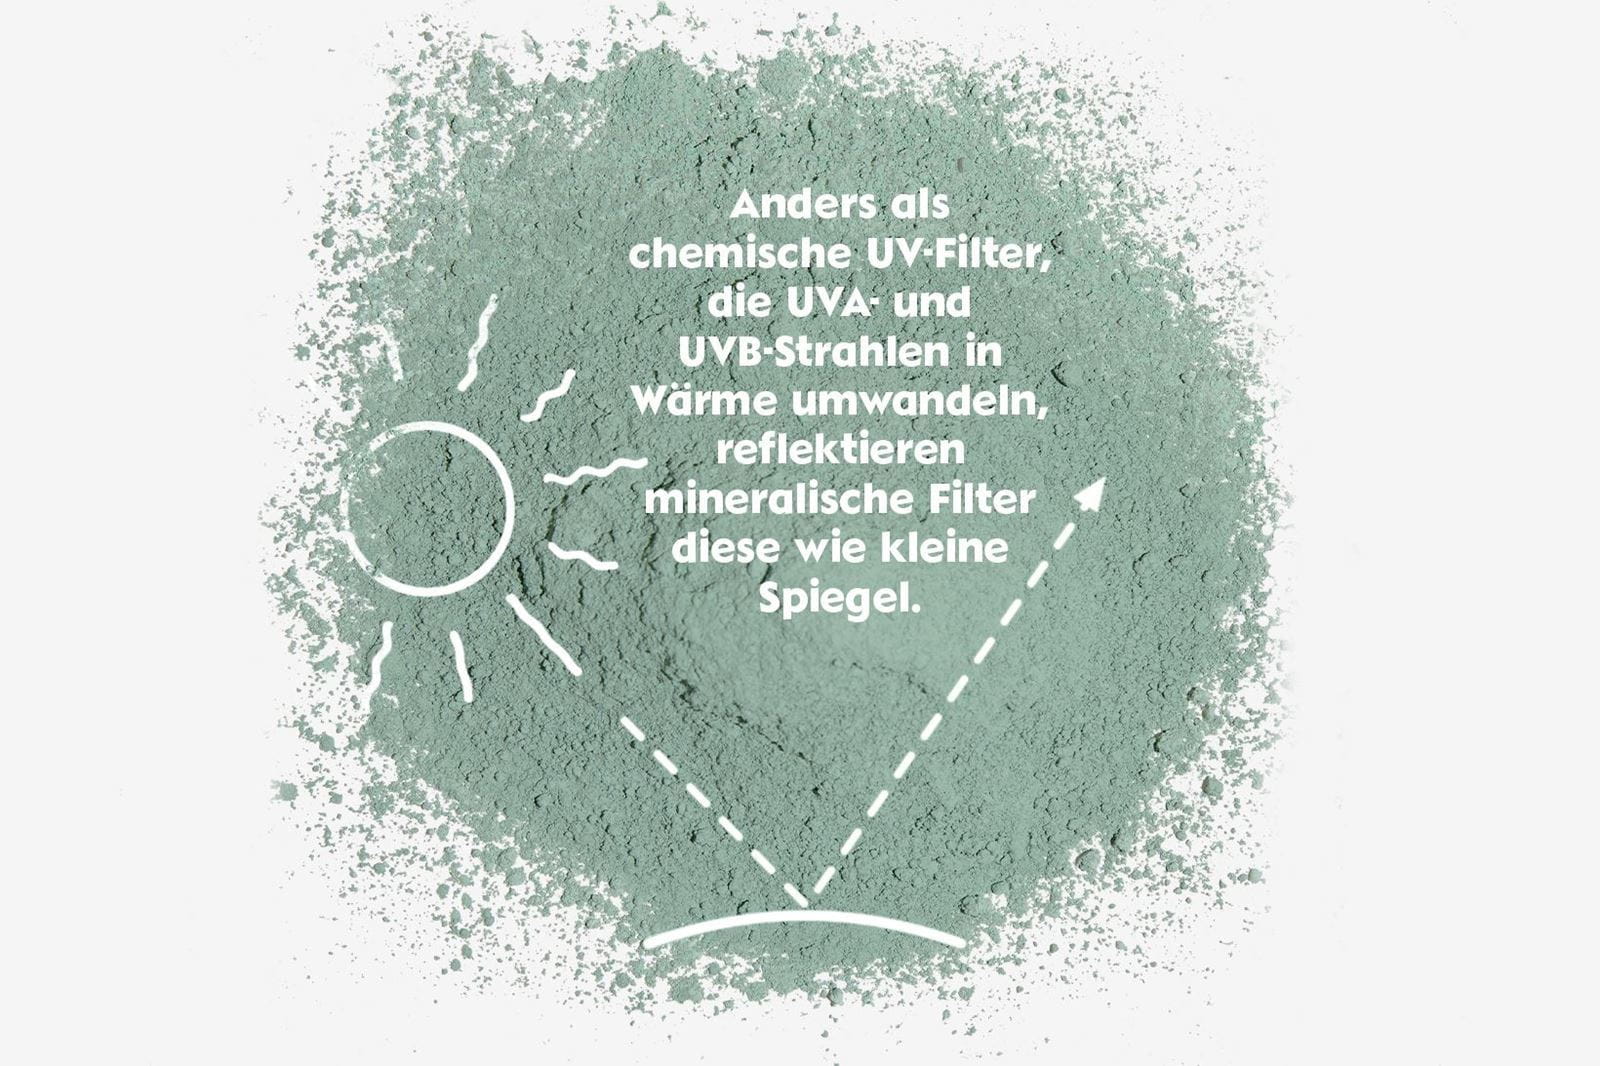  Organische und mineralische UV-Filter